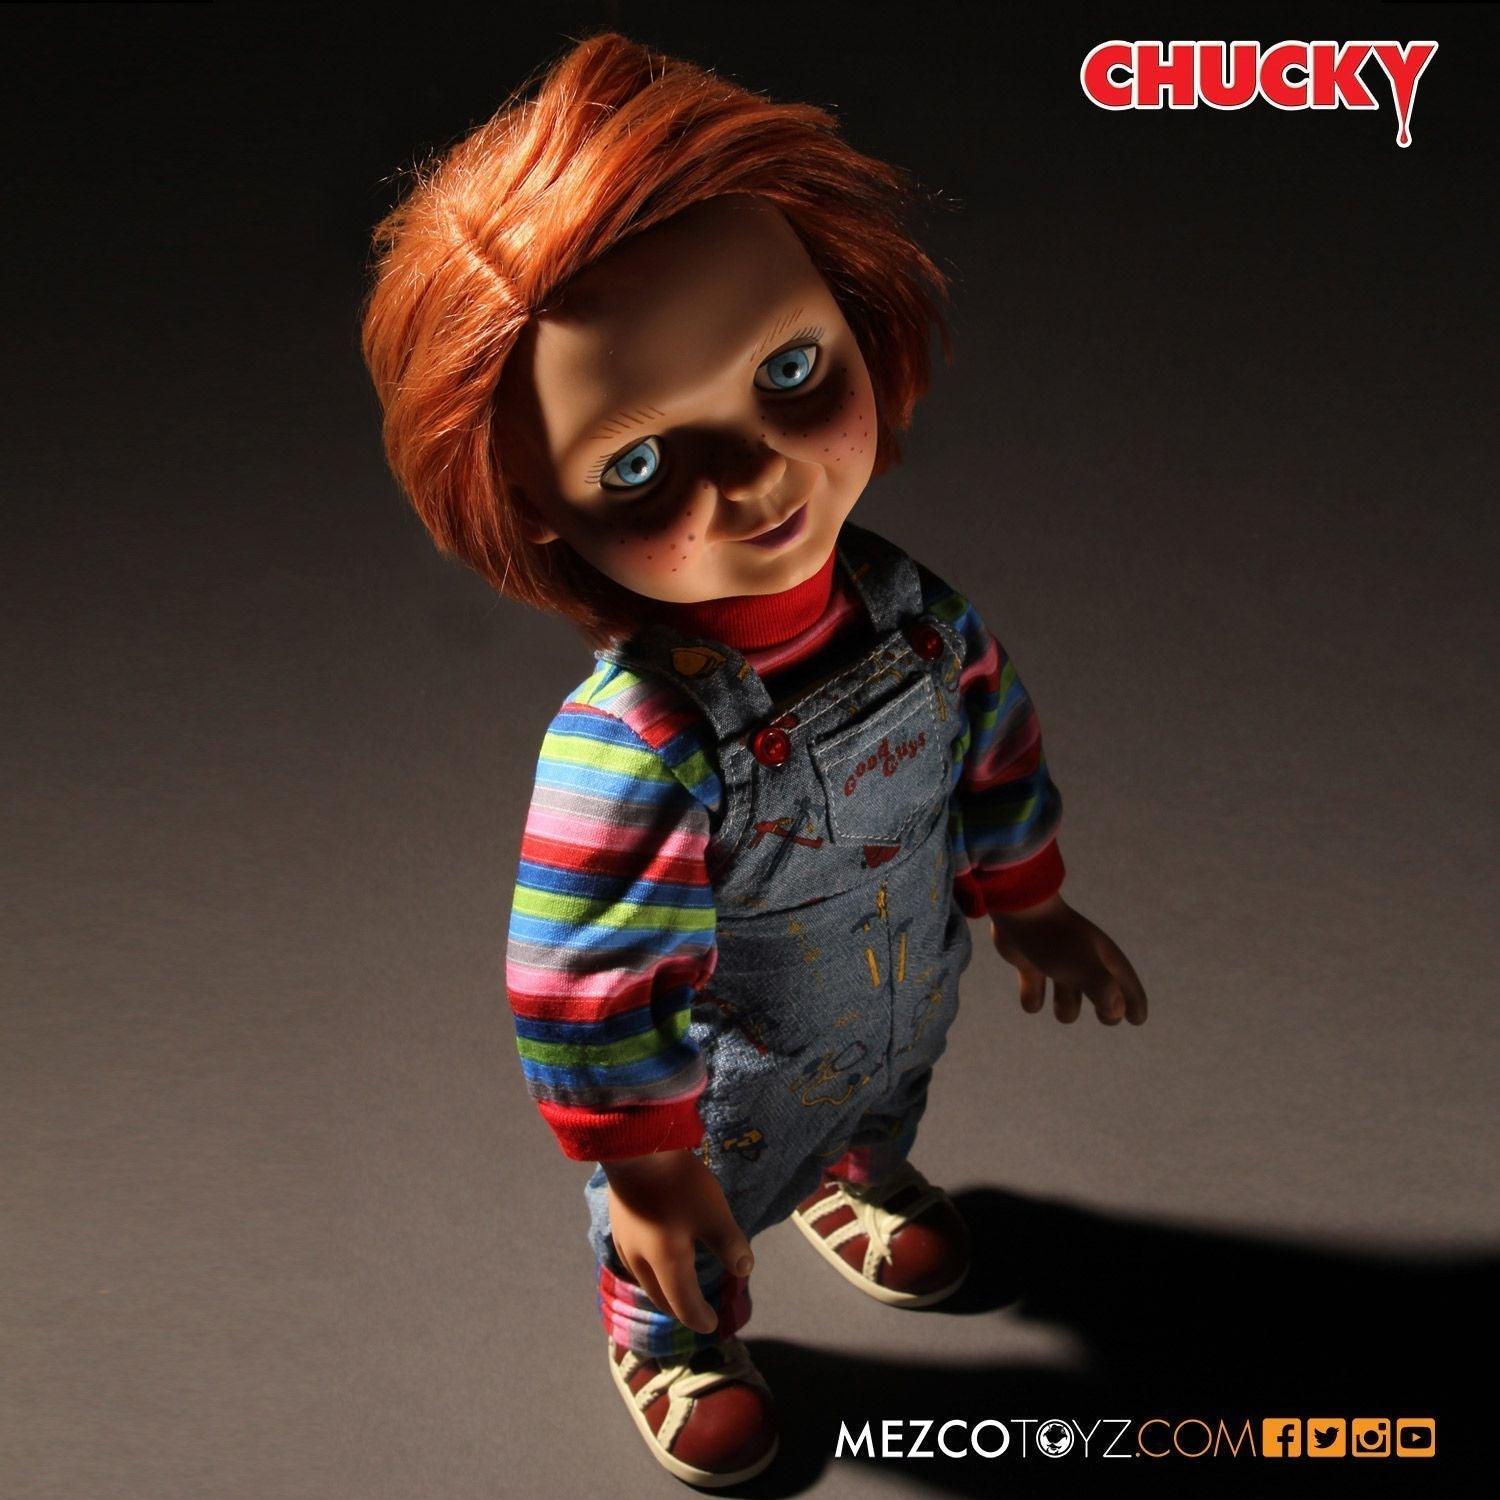 Muñeco Good Guy Chucky con sonido